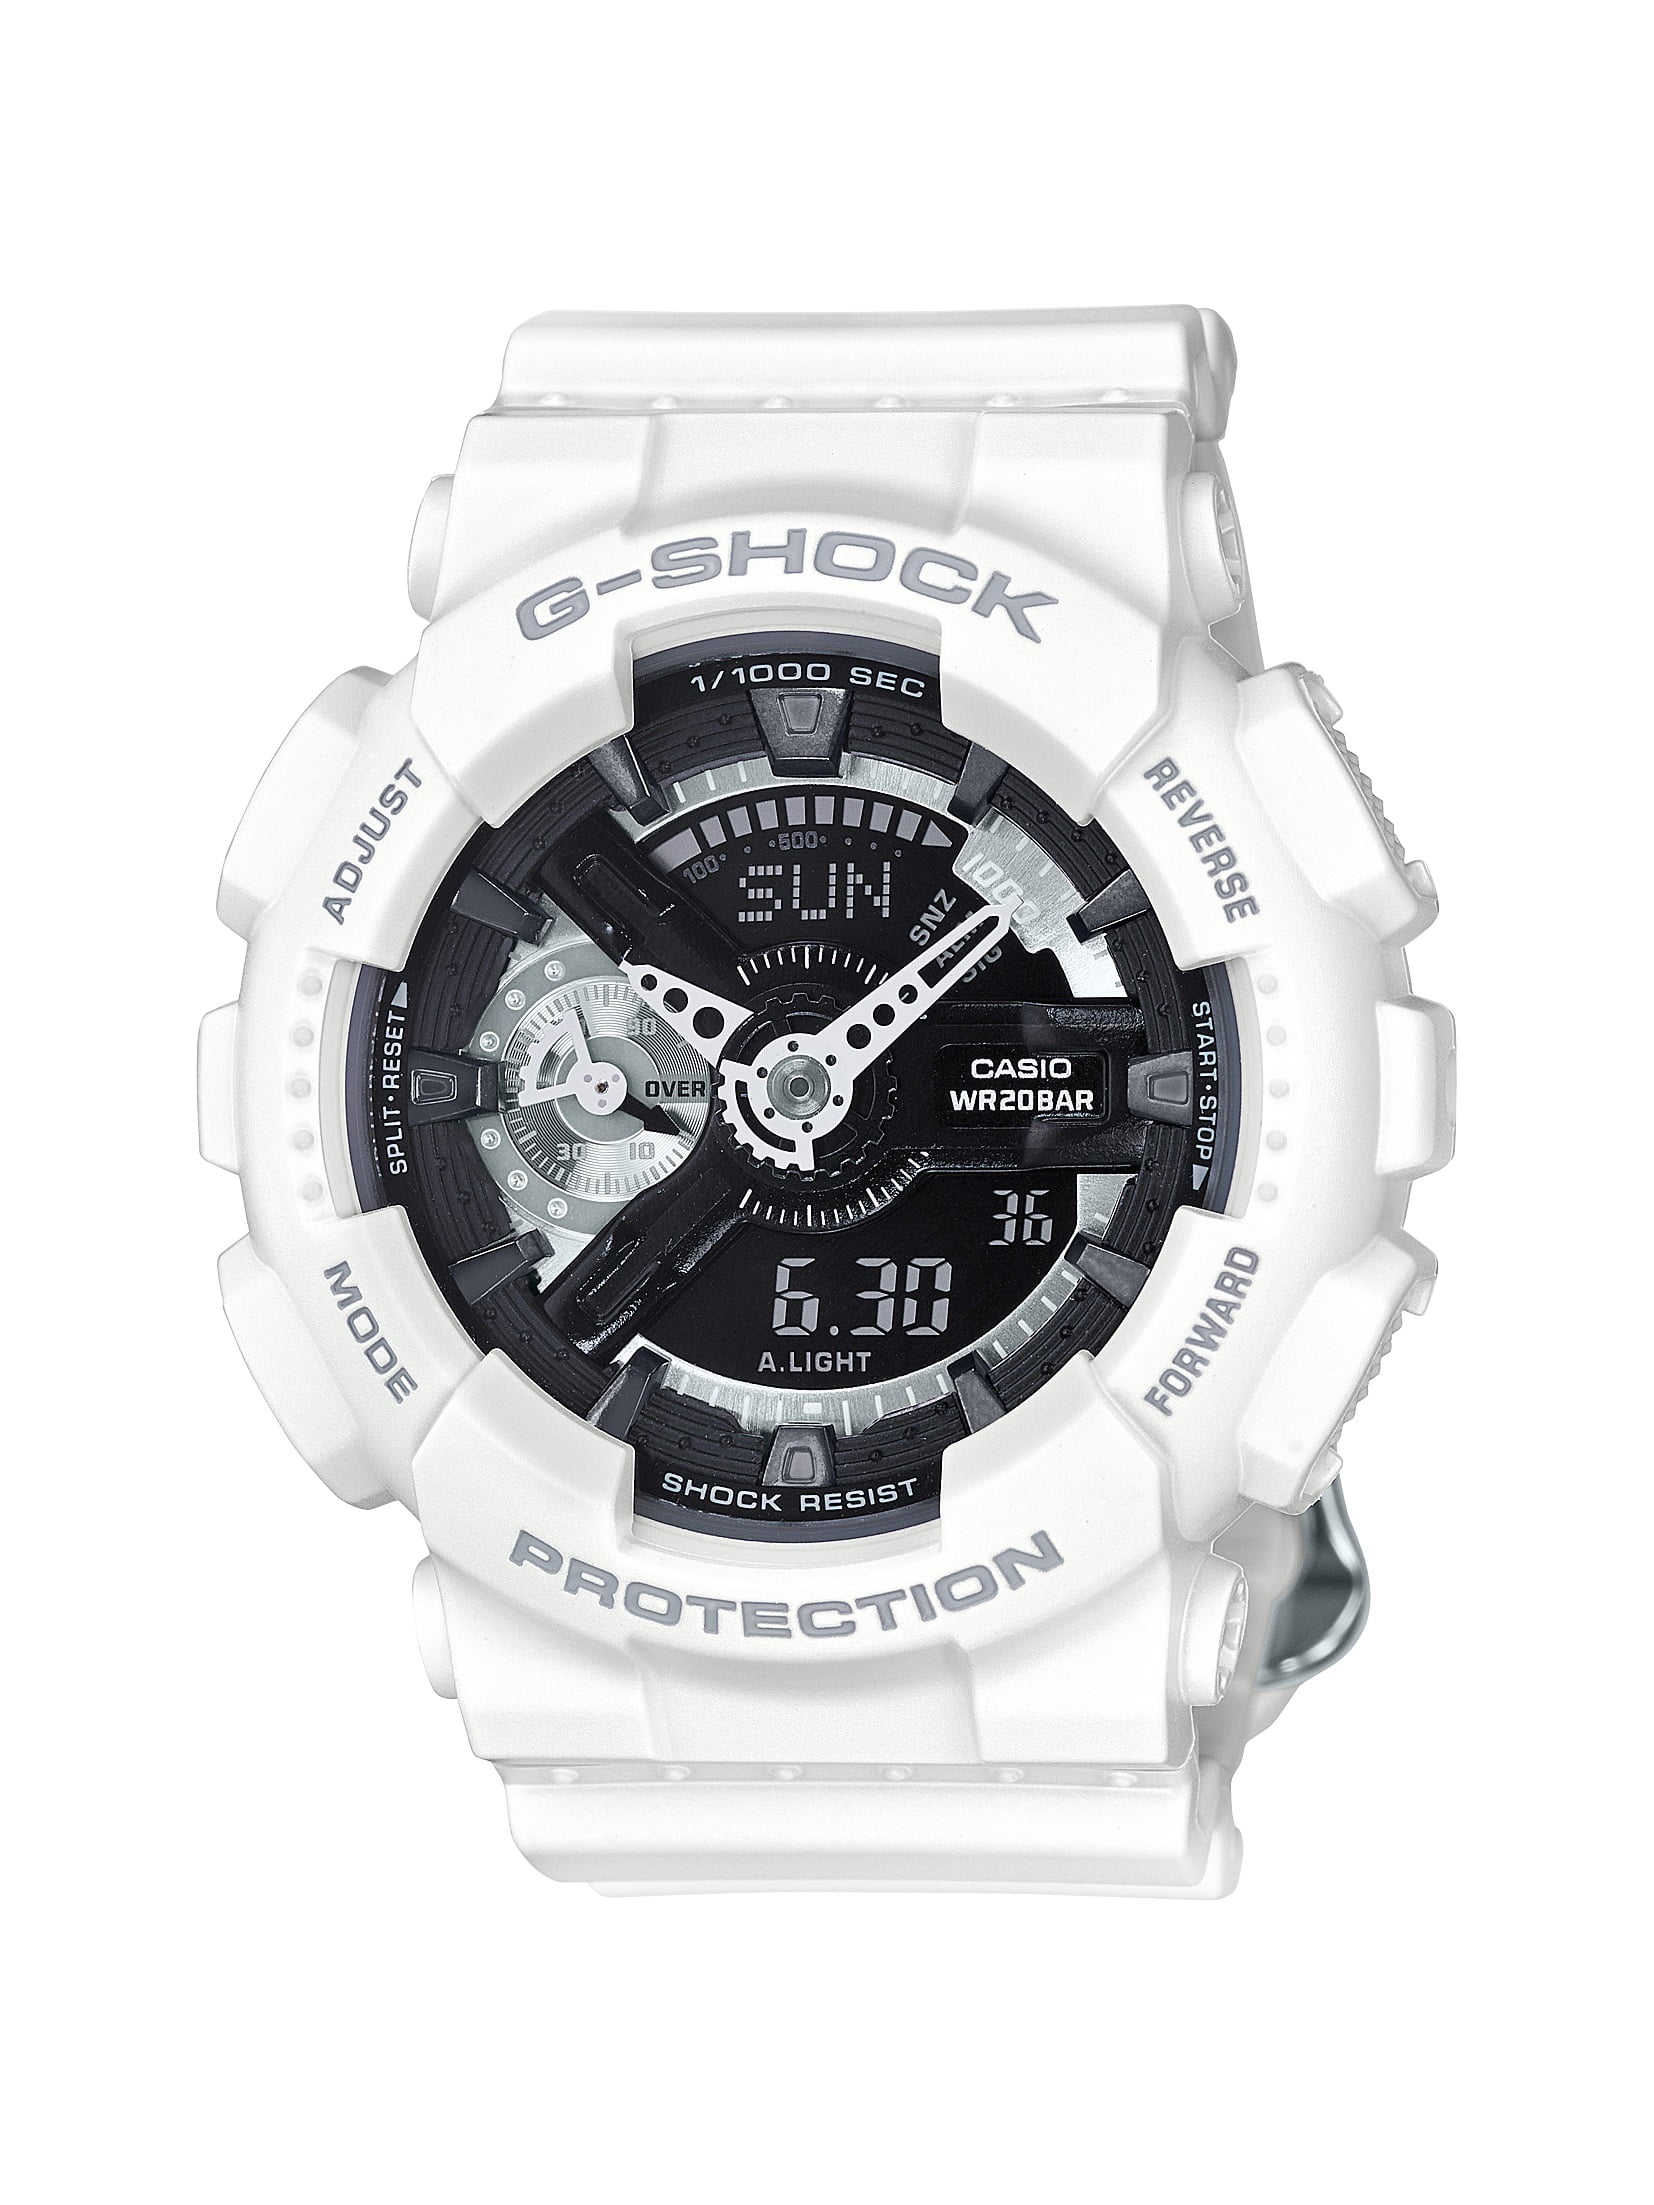 Đồng hồ G-Shock nữ GMA-S110CW–7A